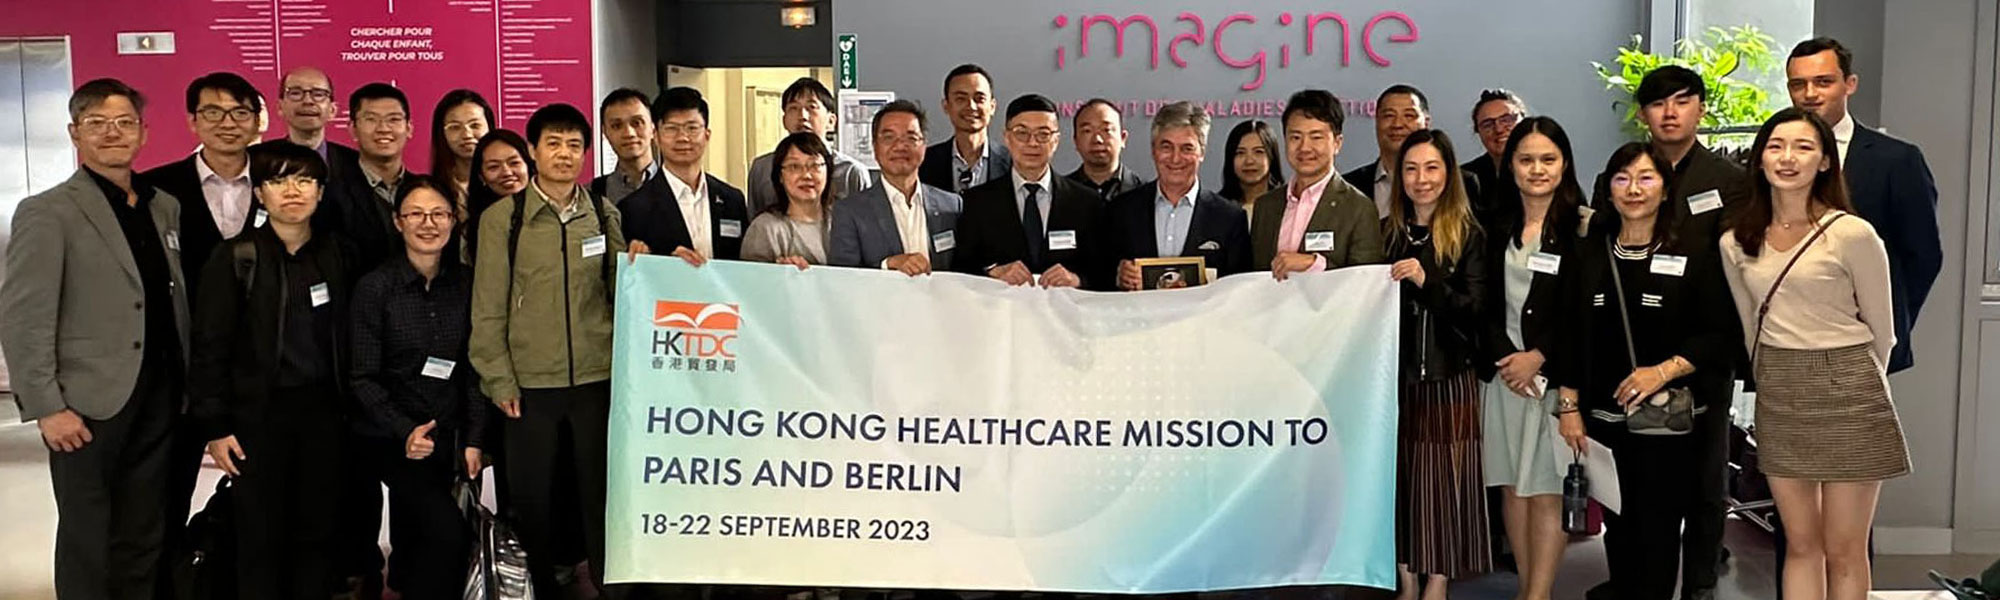 HKBU delegation joins HKTDC’s healthcare mission to Europe 